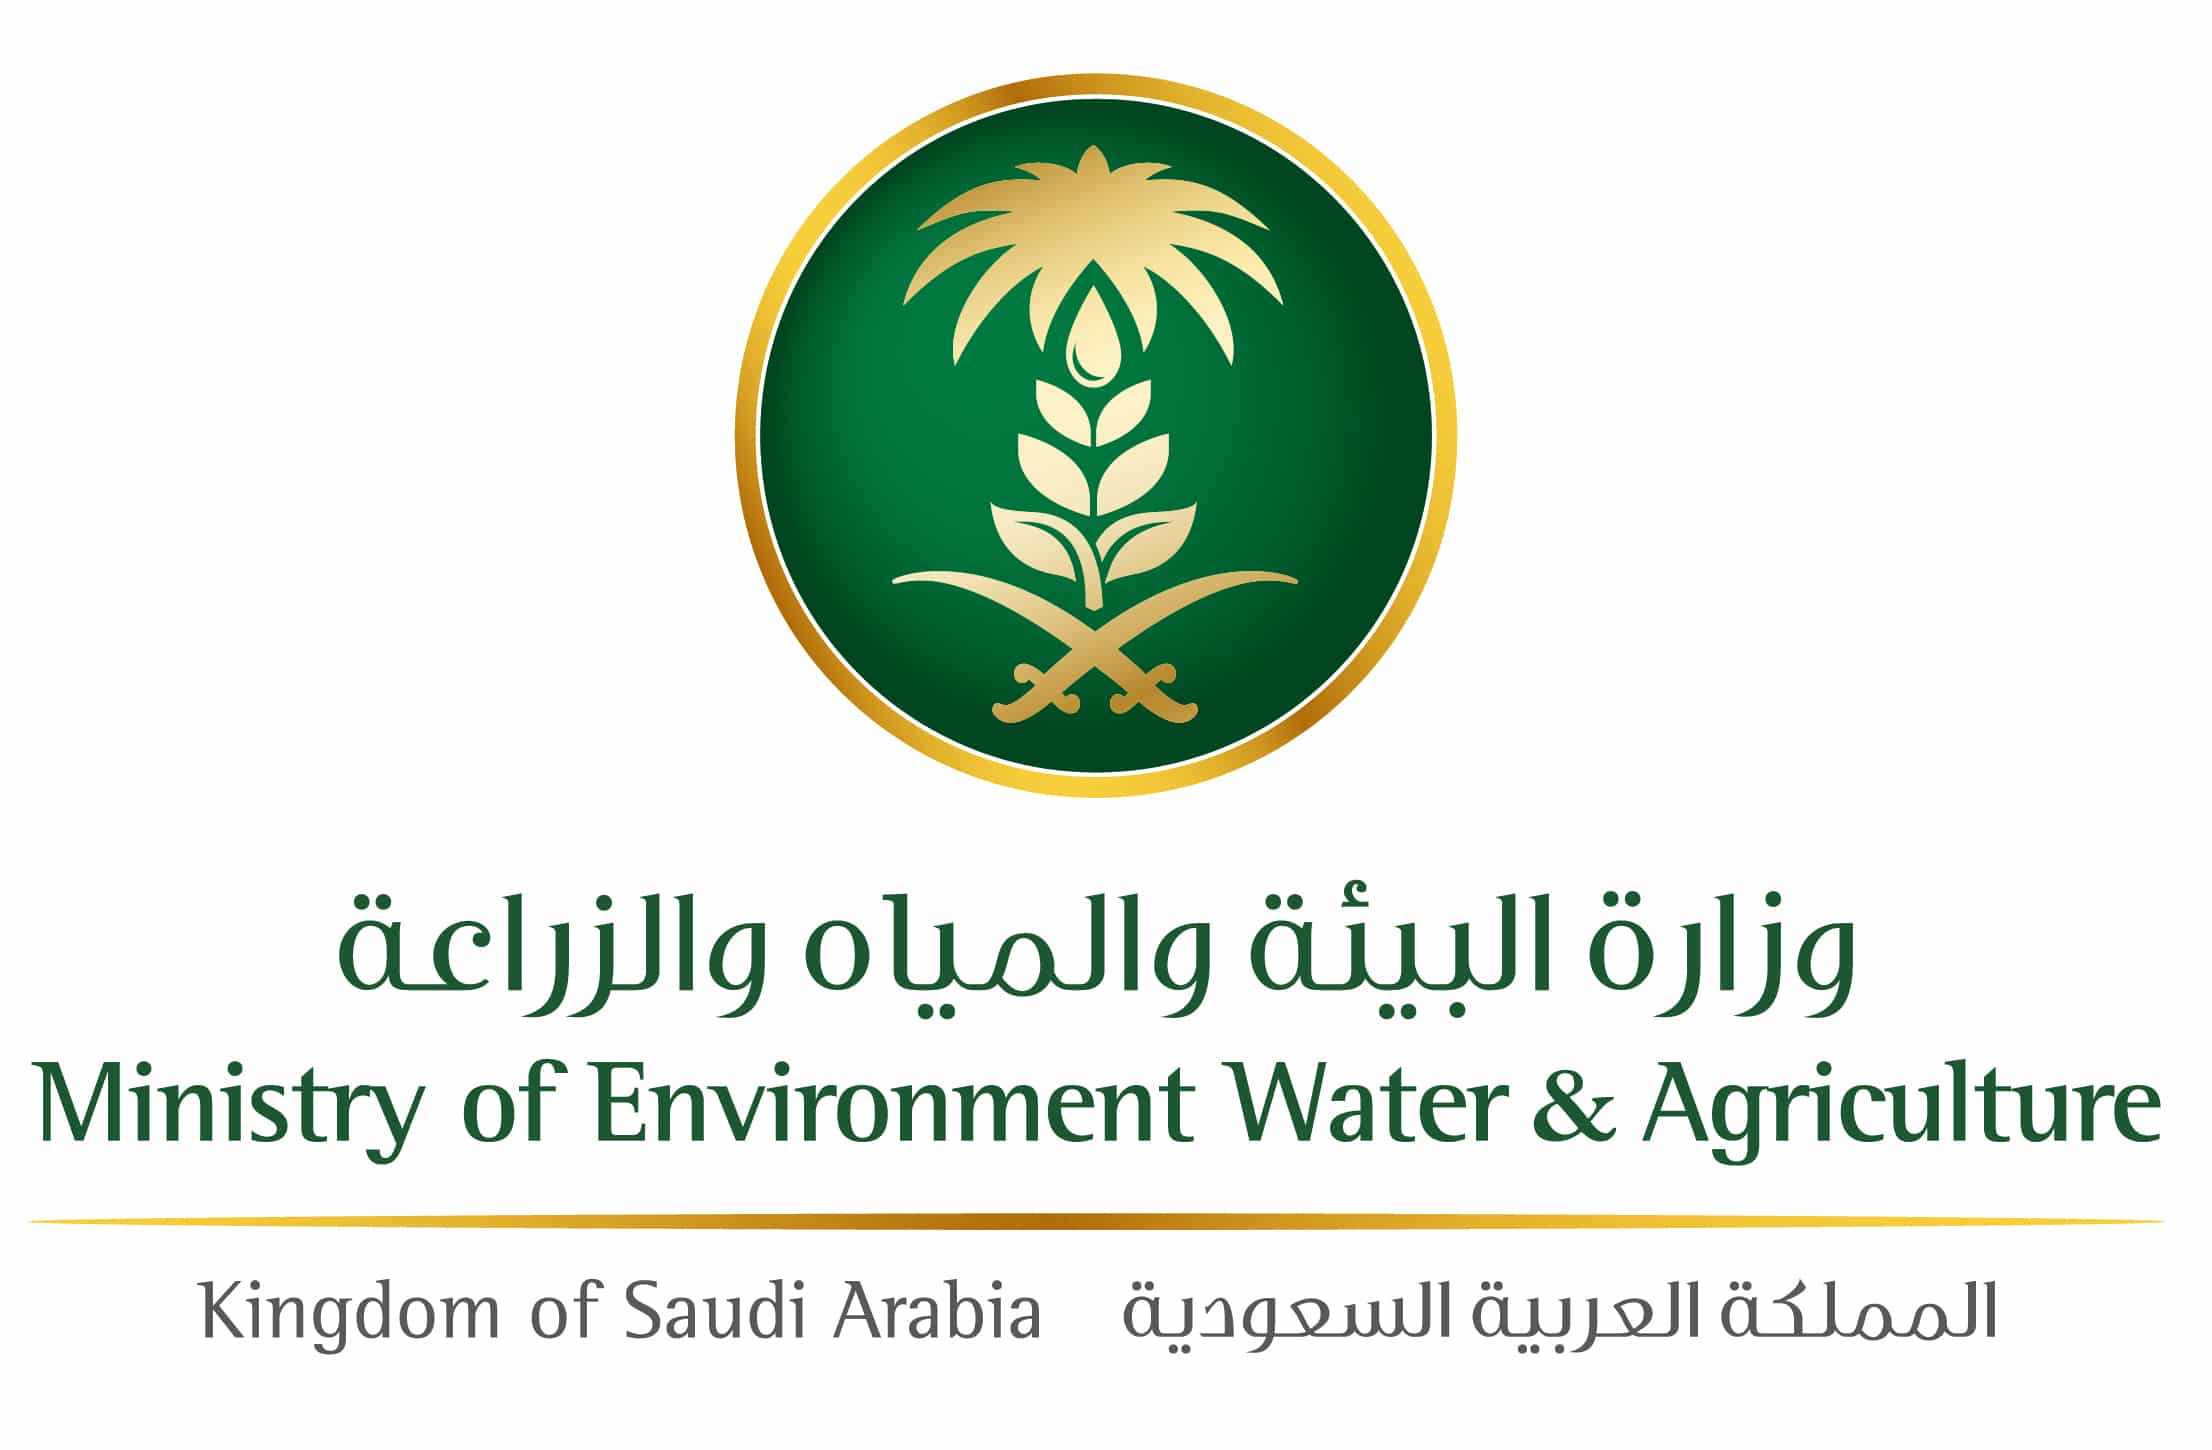 بيان رسمي من وزارة البيئة والمياه والزراعة حول ظهور إنفلونزا الطيور (H5N8) في مدينة الرياض